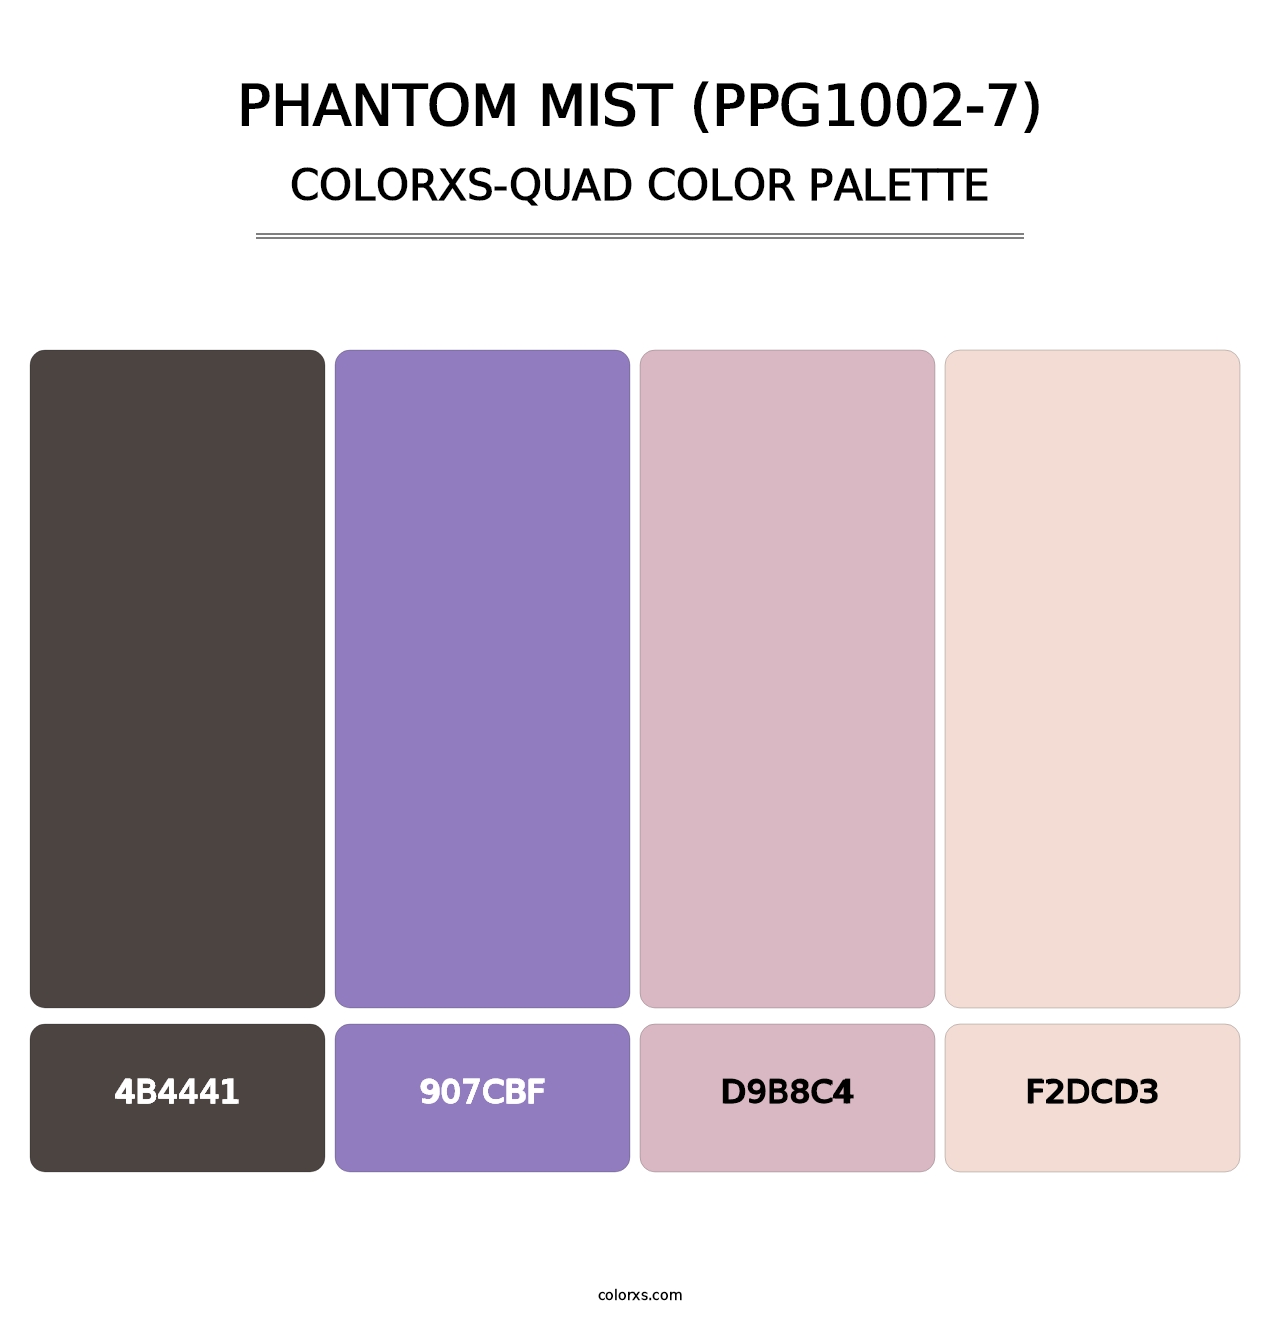 Phantom Mist (PPG1002-7) - Colorxs Quad Palette